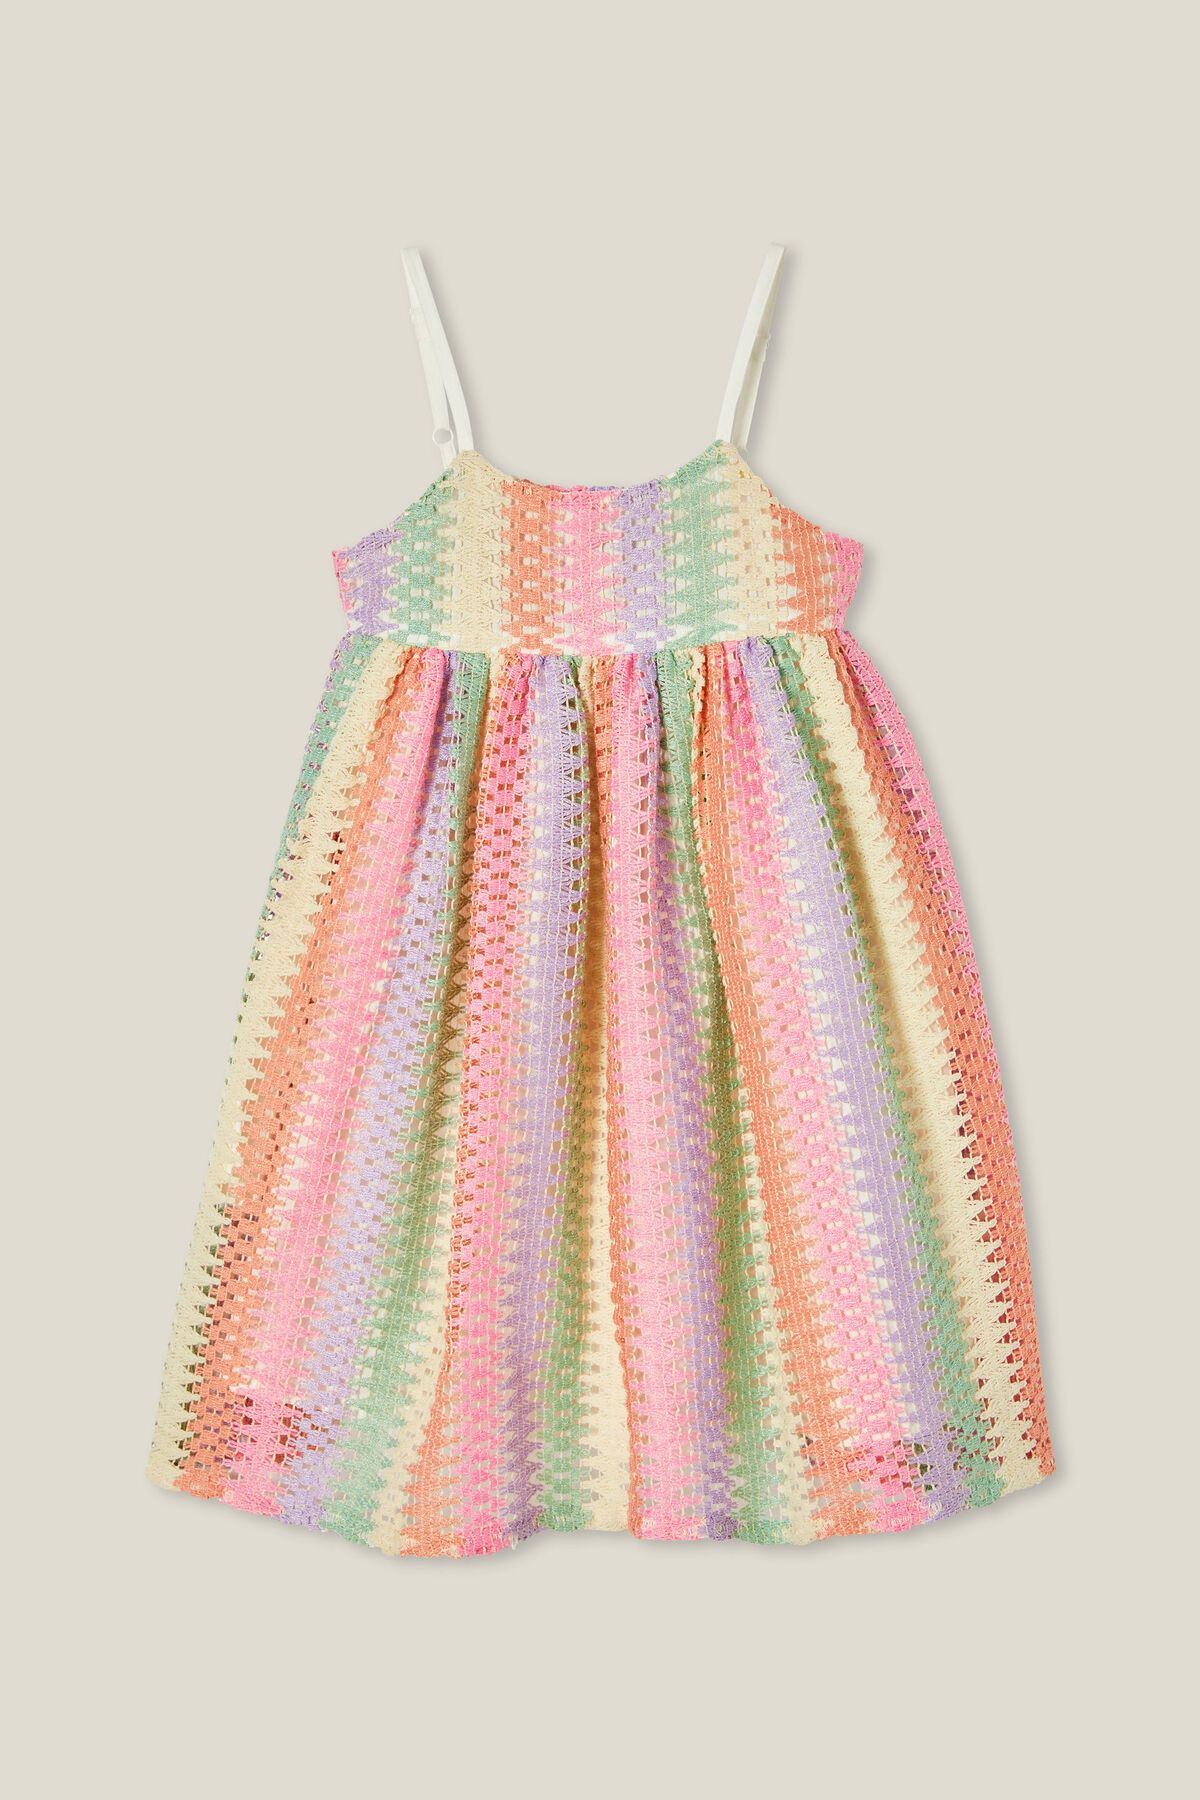 Eloise Sleeveless Dress | Cotton On (US)